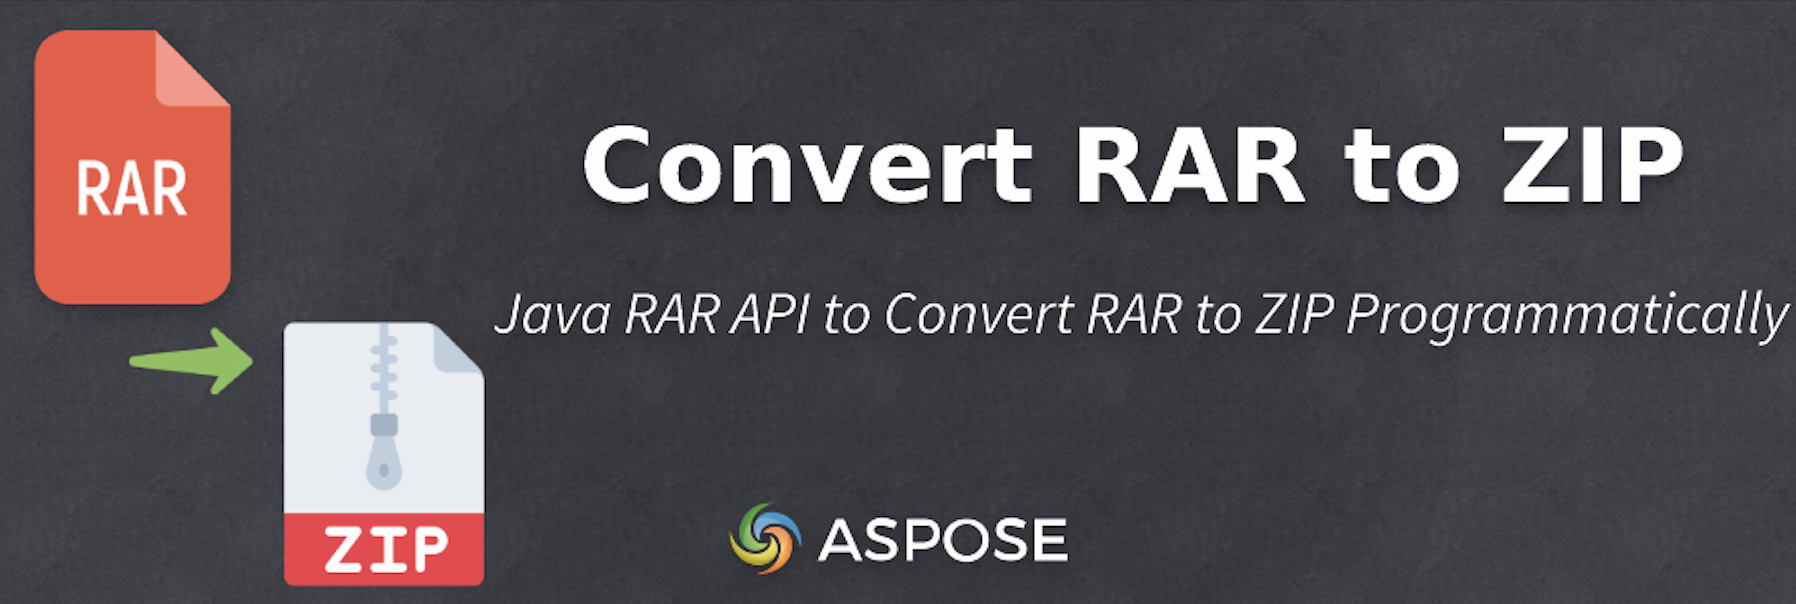 Java で RAR を ZIP に変換する - Java RAR API